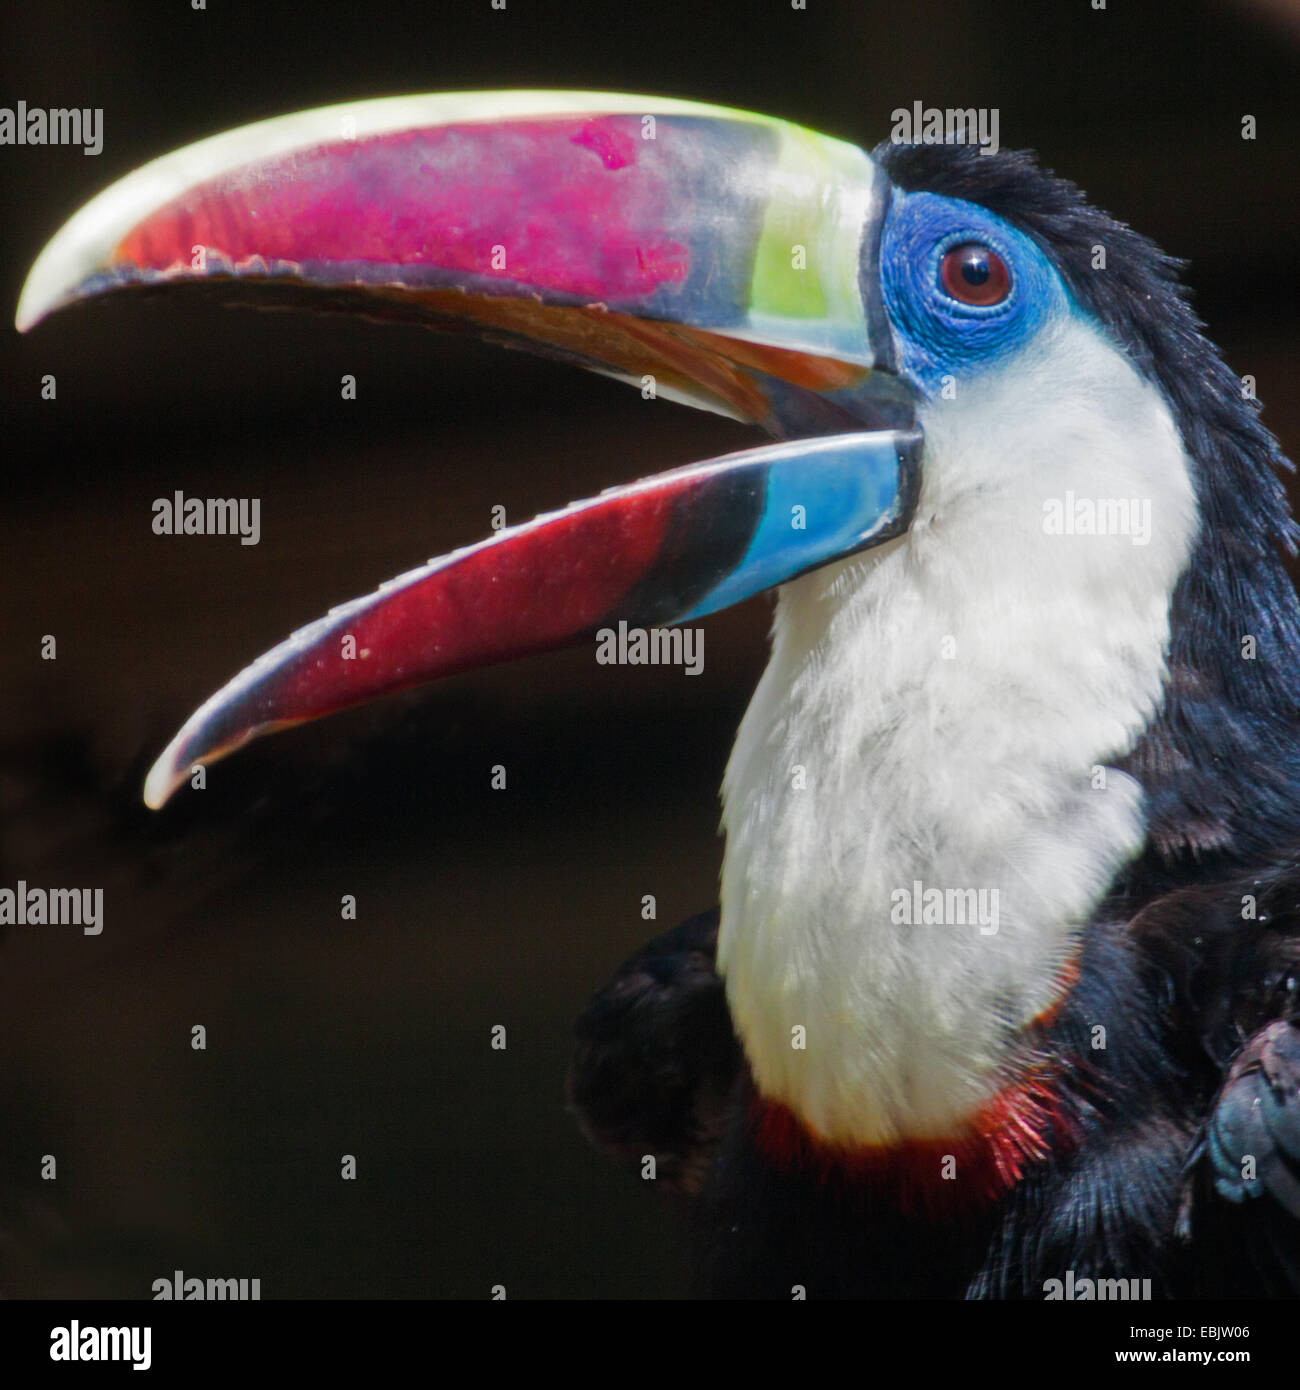 Red-billed toucan (Ramphastos tucanus), portrait Banque D'Images